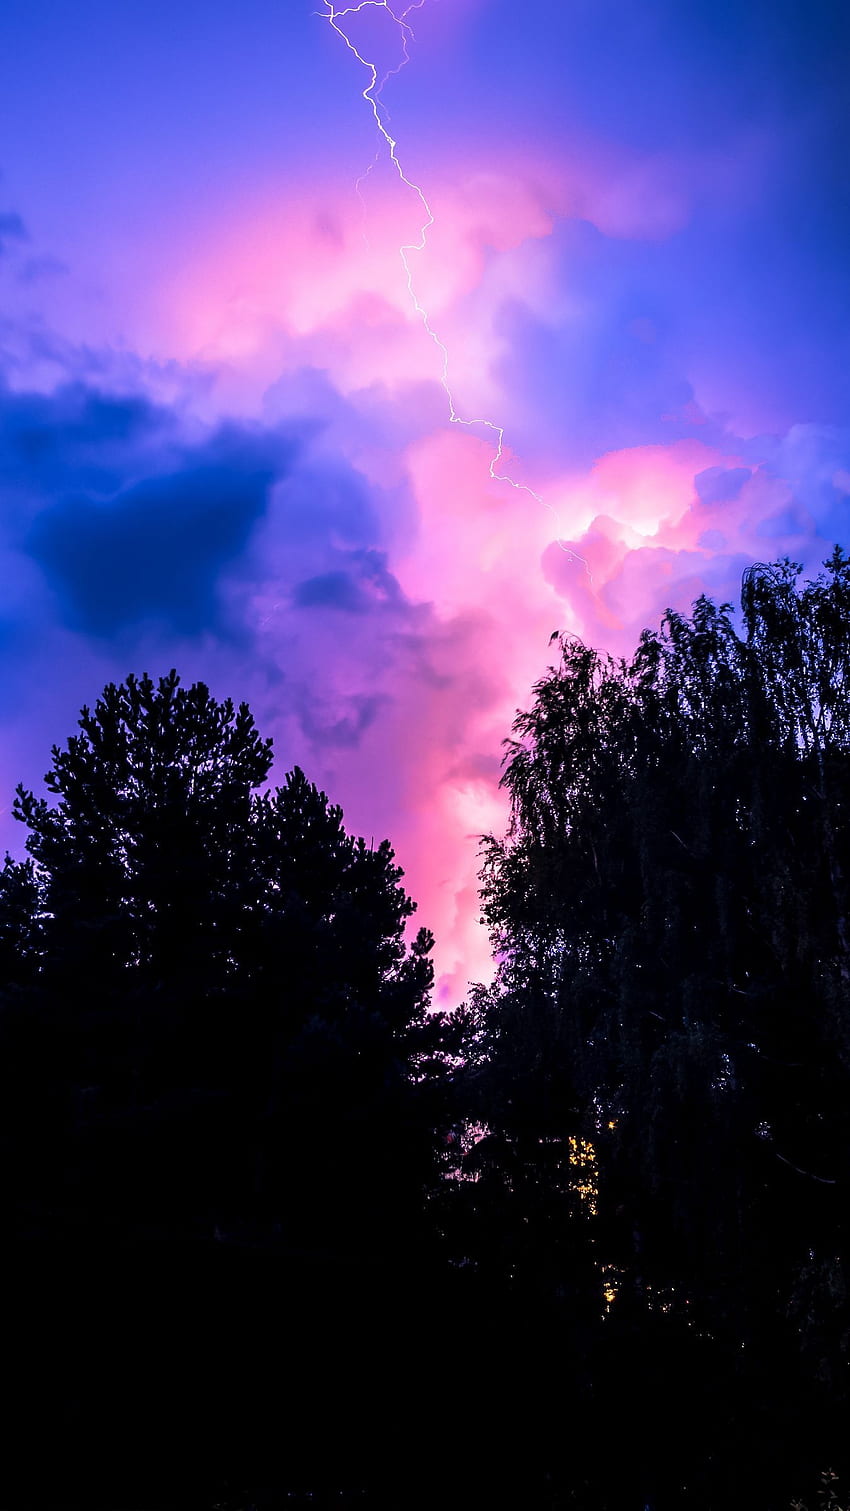 嵐、空、木、夜 iphone 8+/7+/6s+/ 視差背景用、ピンクストーム HD電話の壁紙